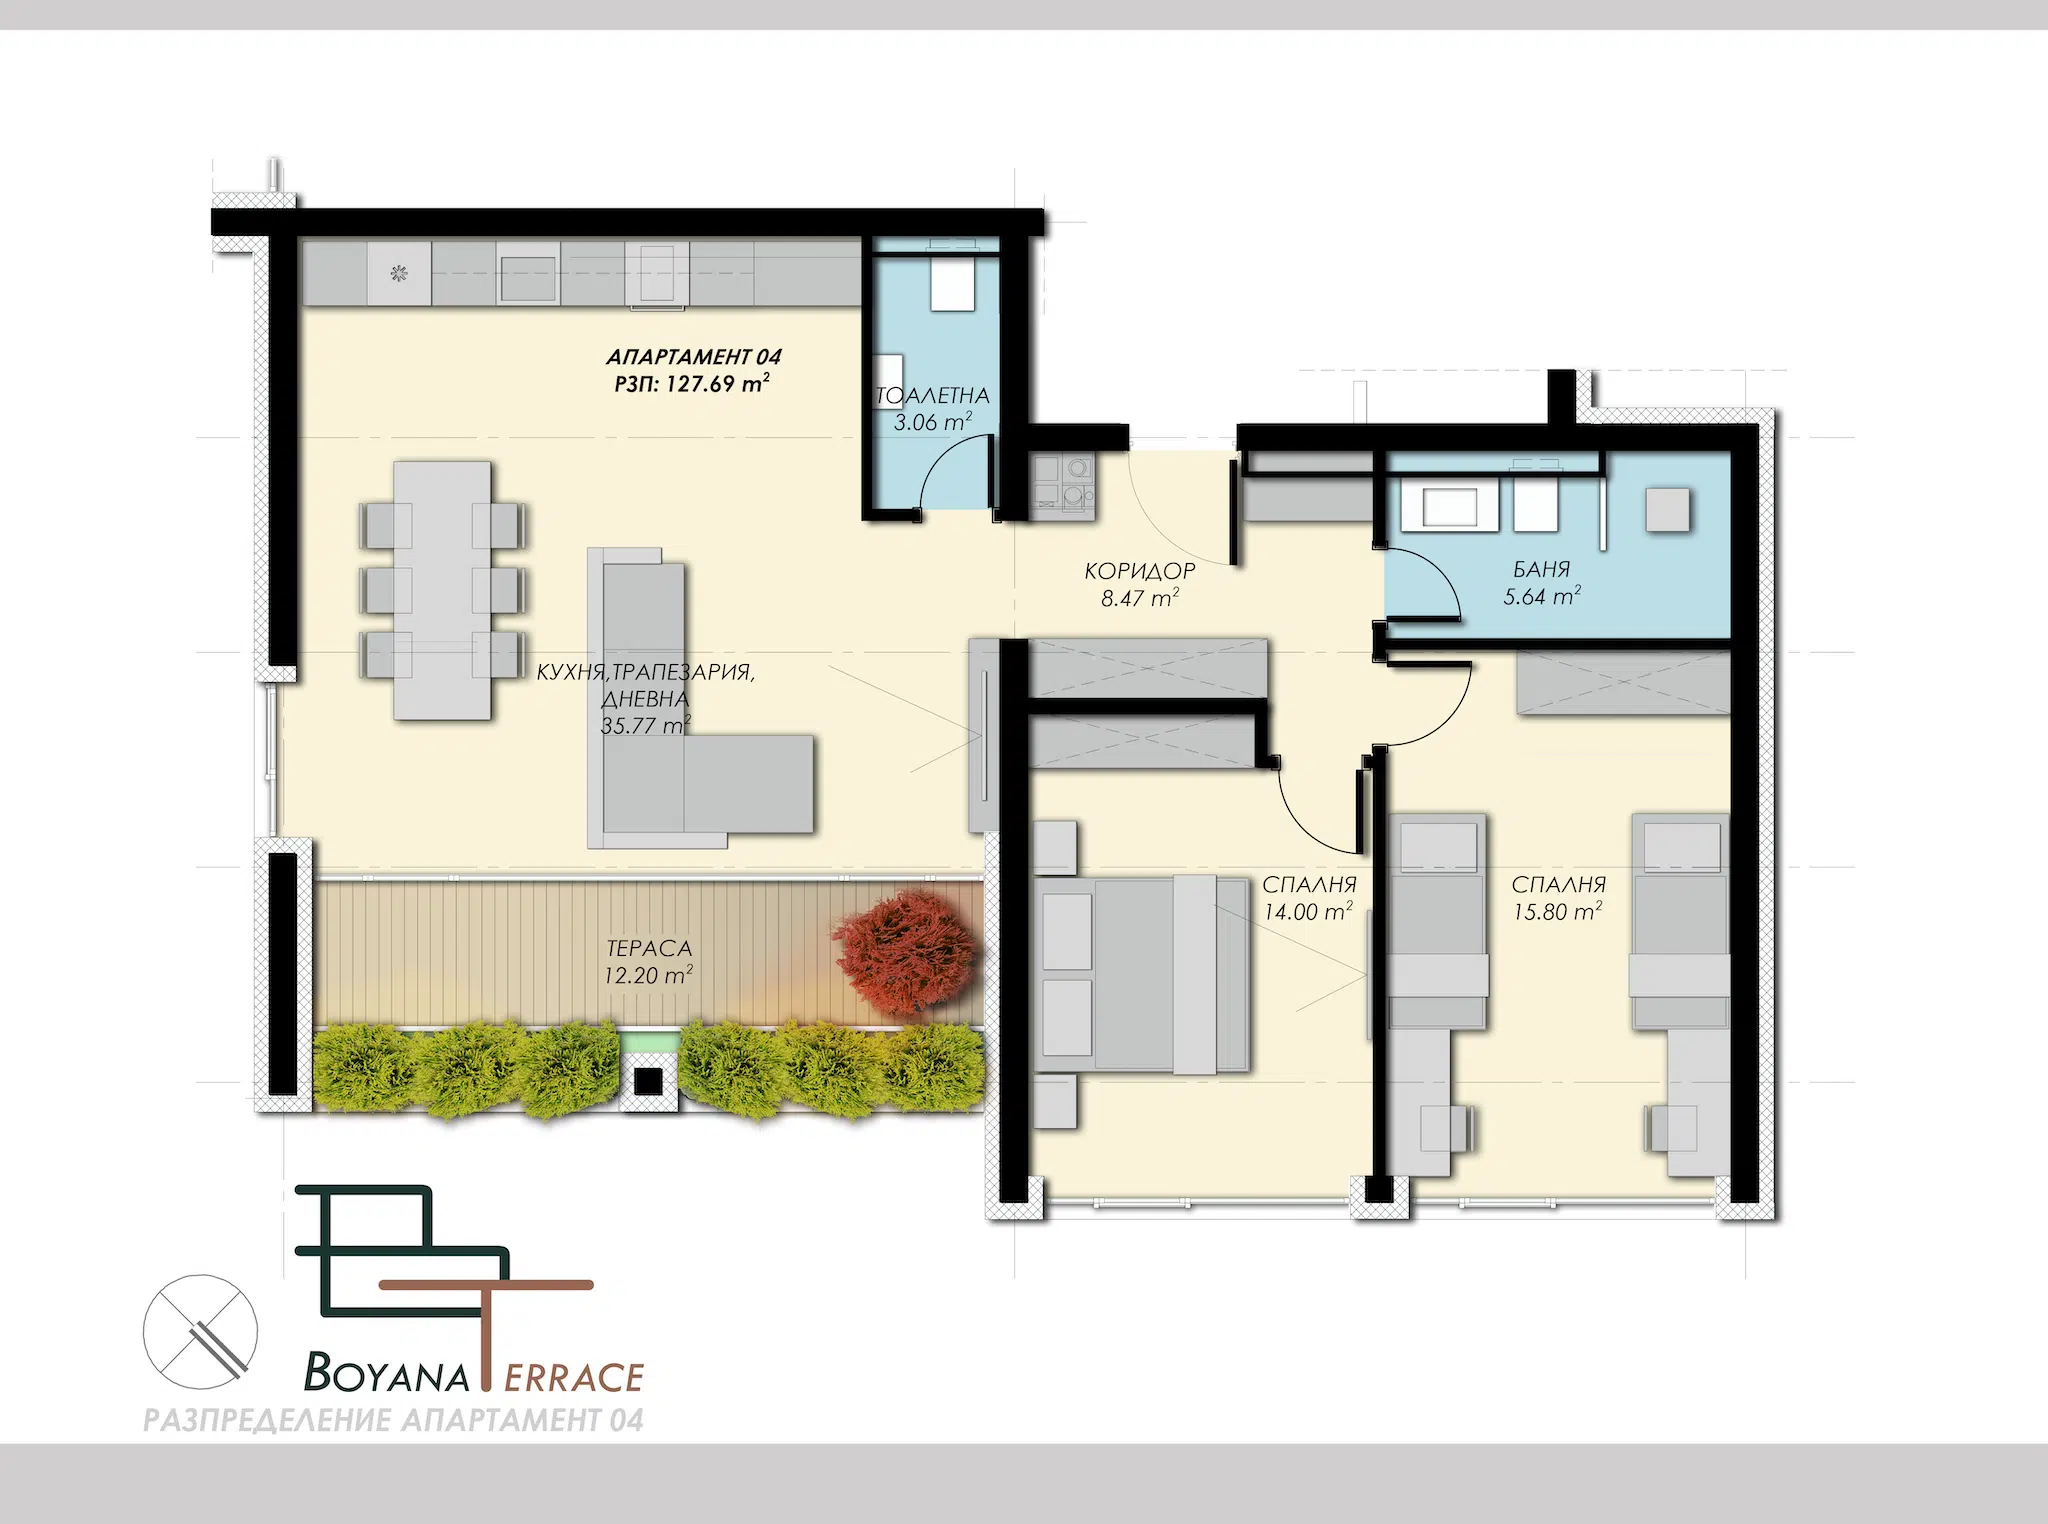 boyana-terrace-boyana-terrace-apartament-4-190823